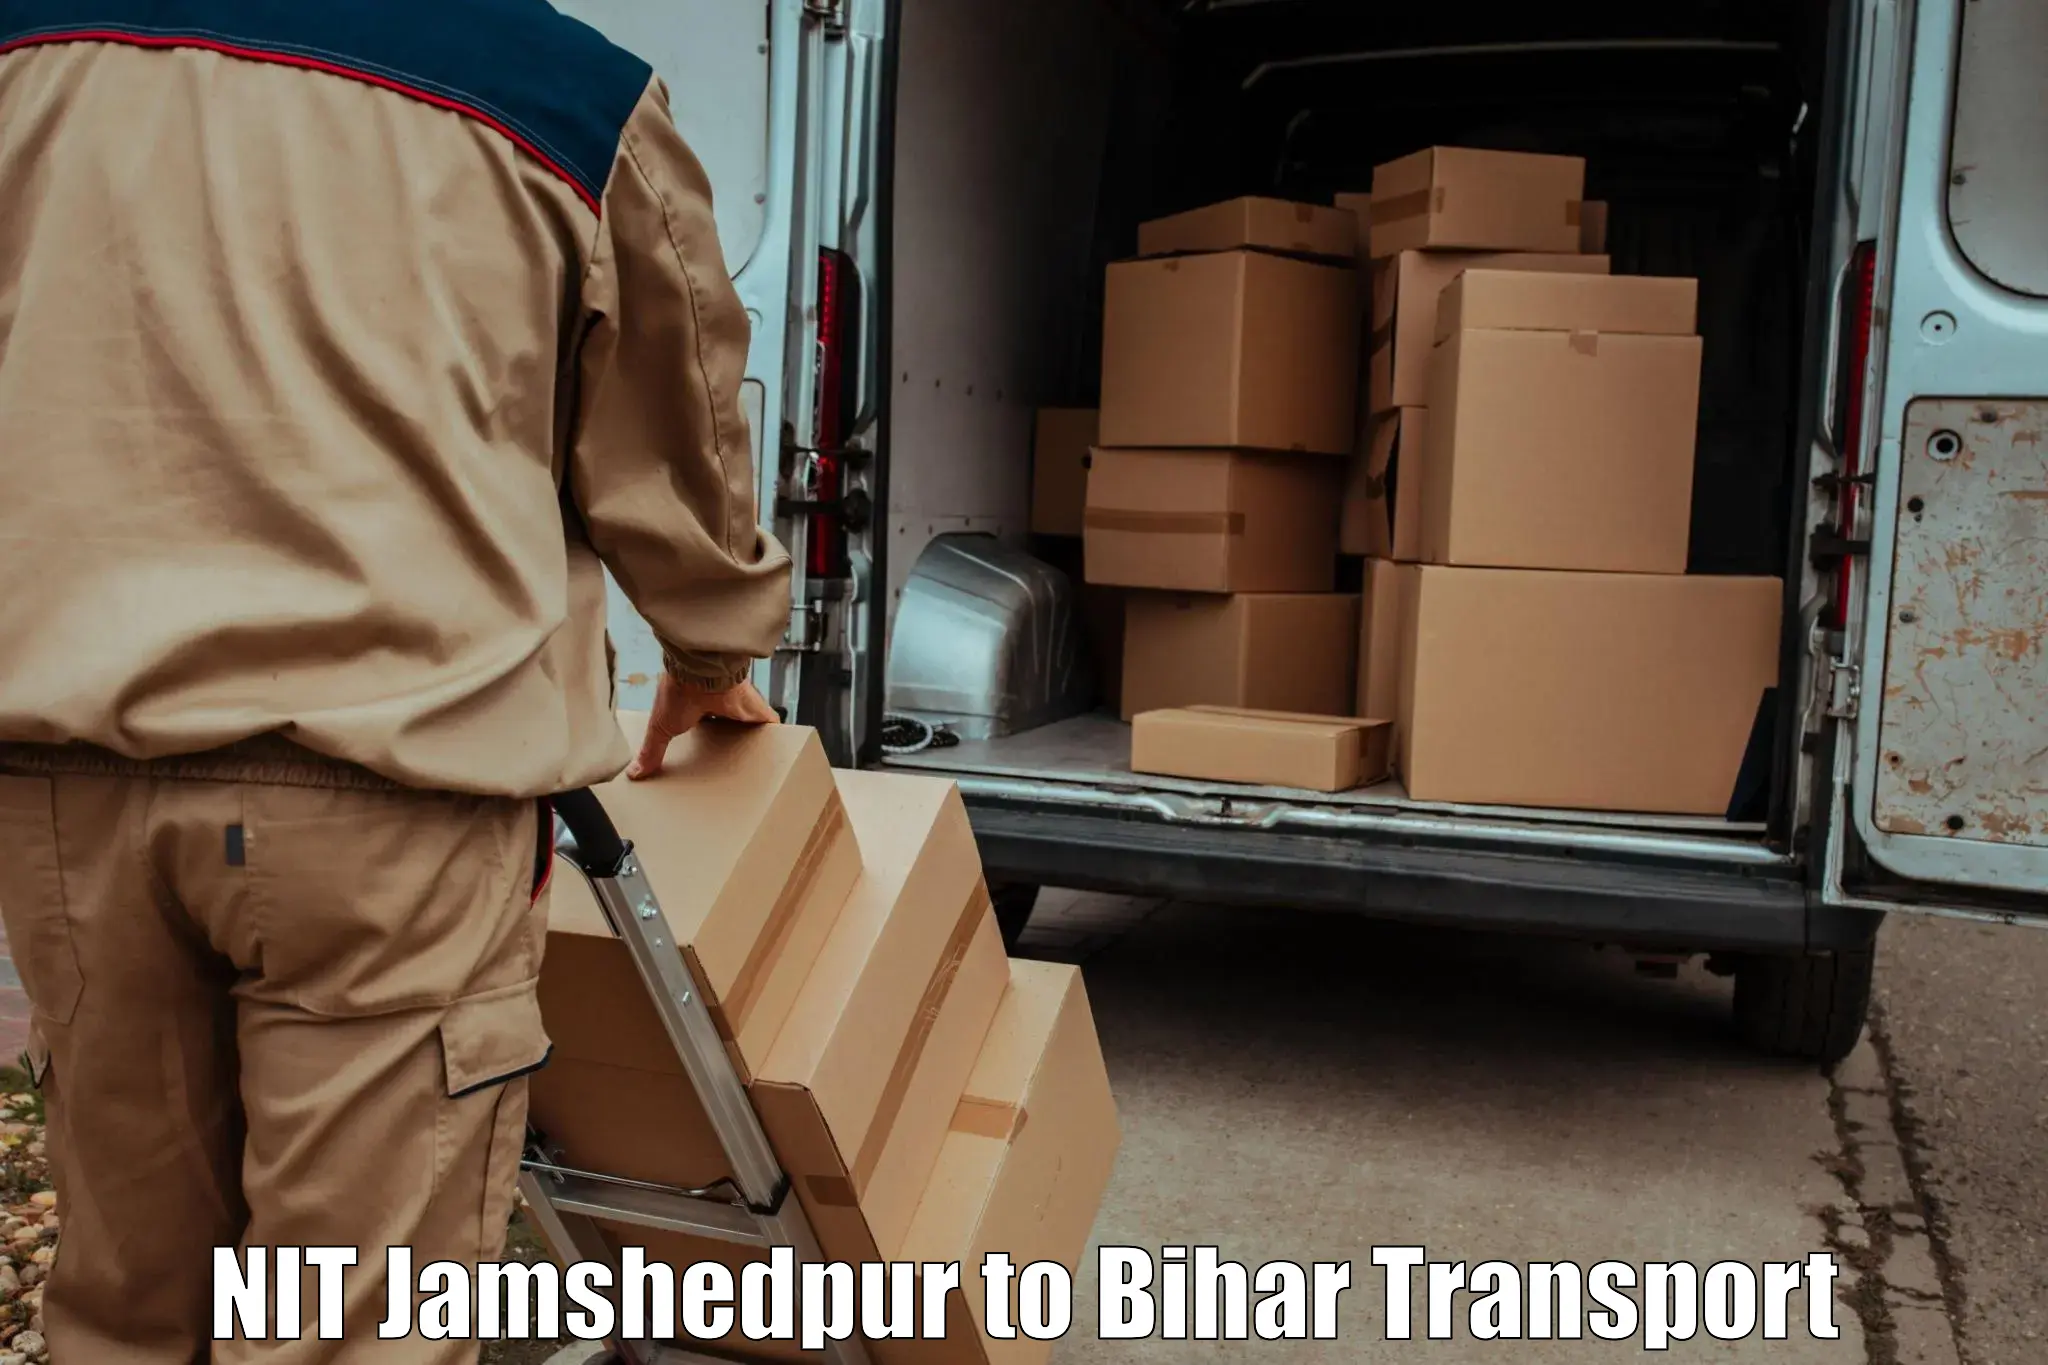 Online transport service NIT Jamshedpur to Kochas